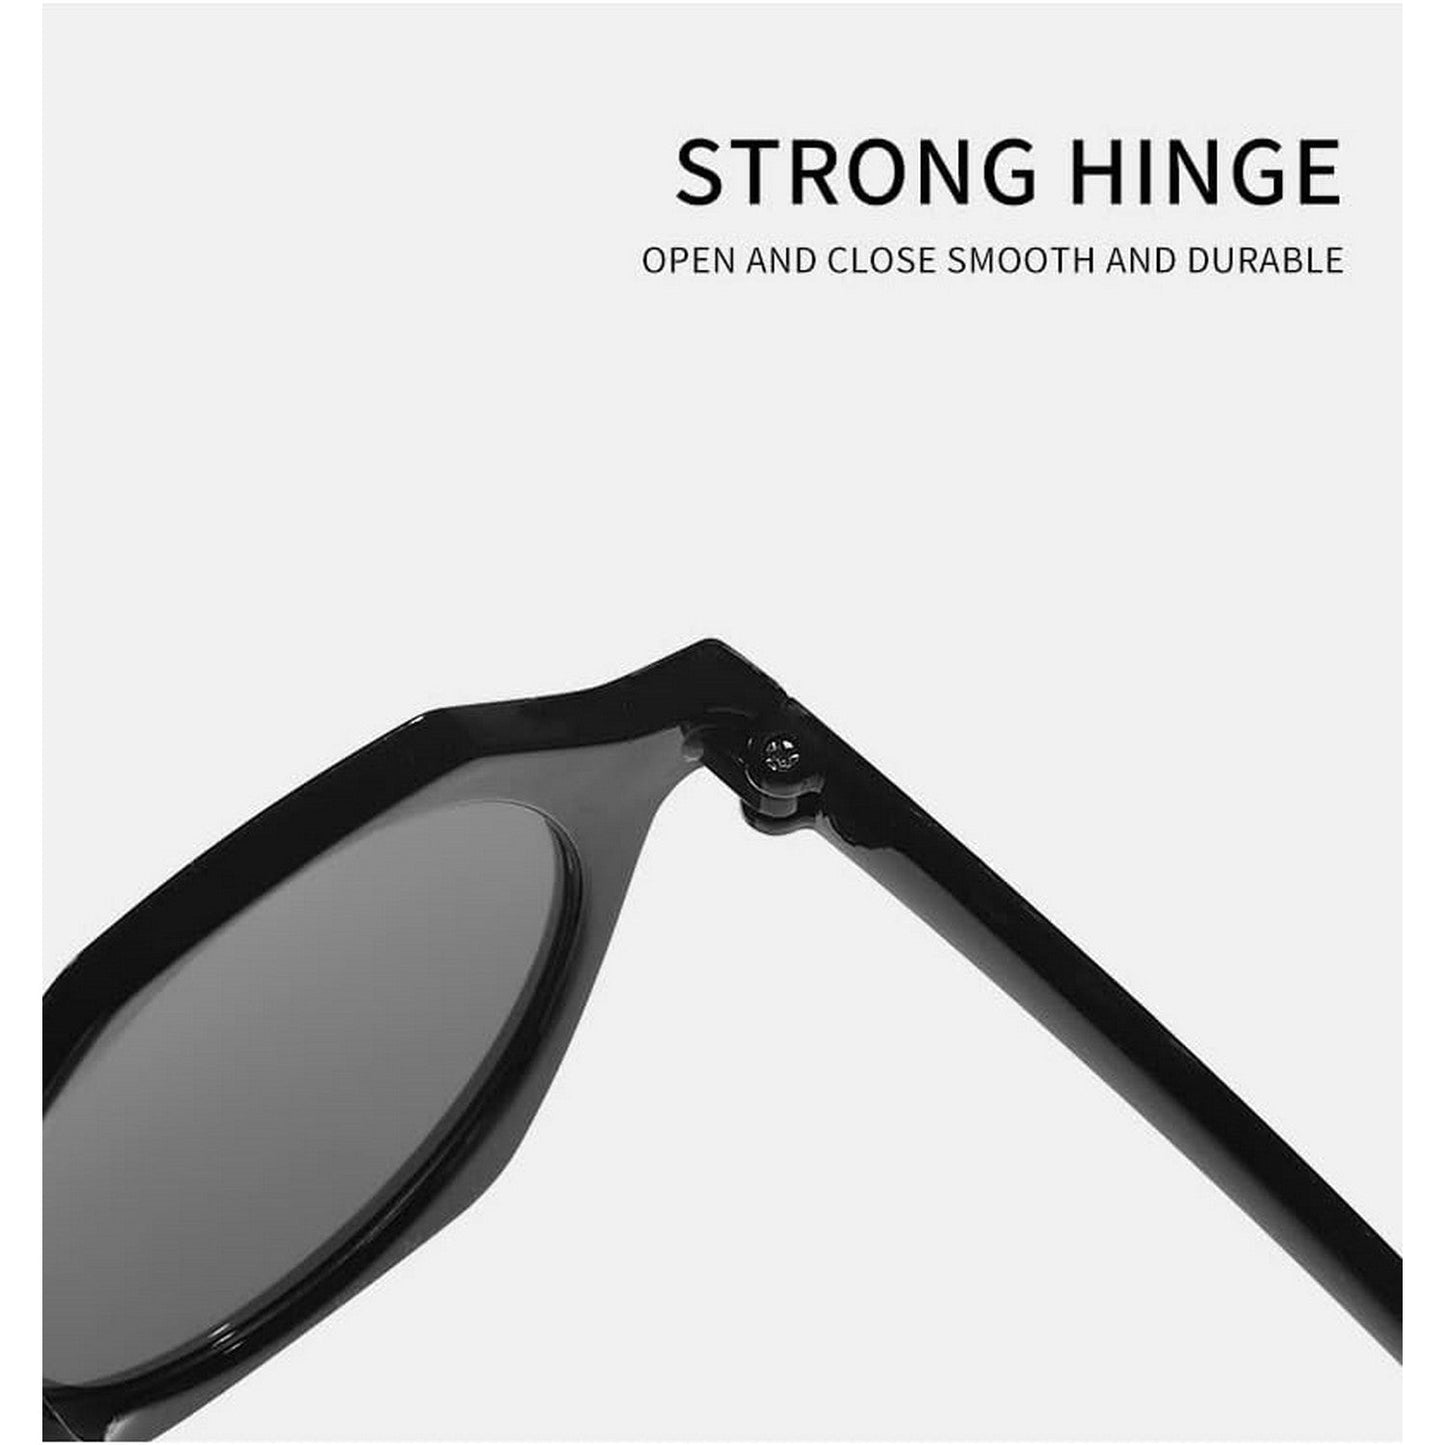 LunaShade Round Hexa Sunglasses for Men and Women Beach Glasses Pink